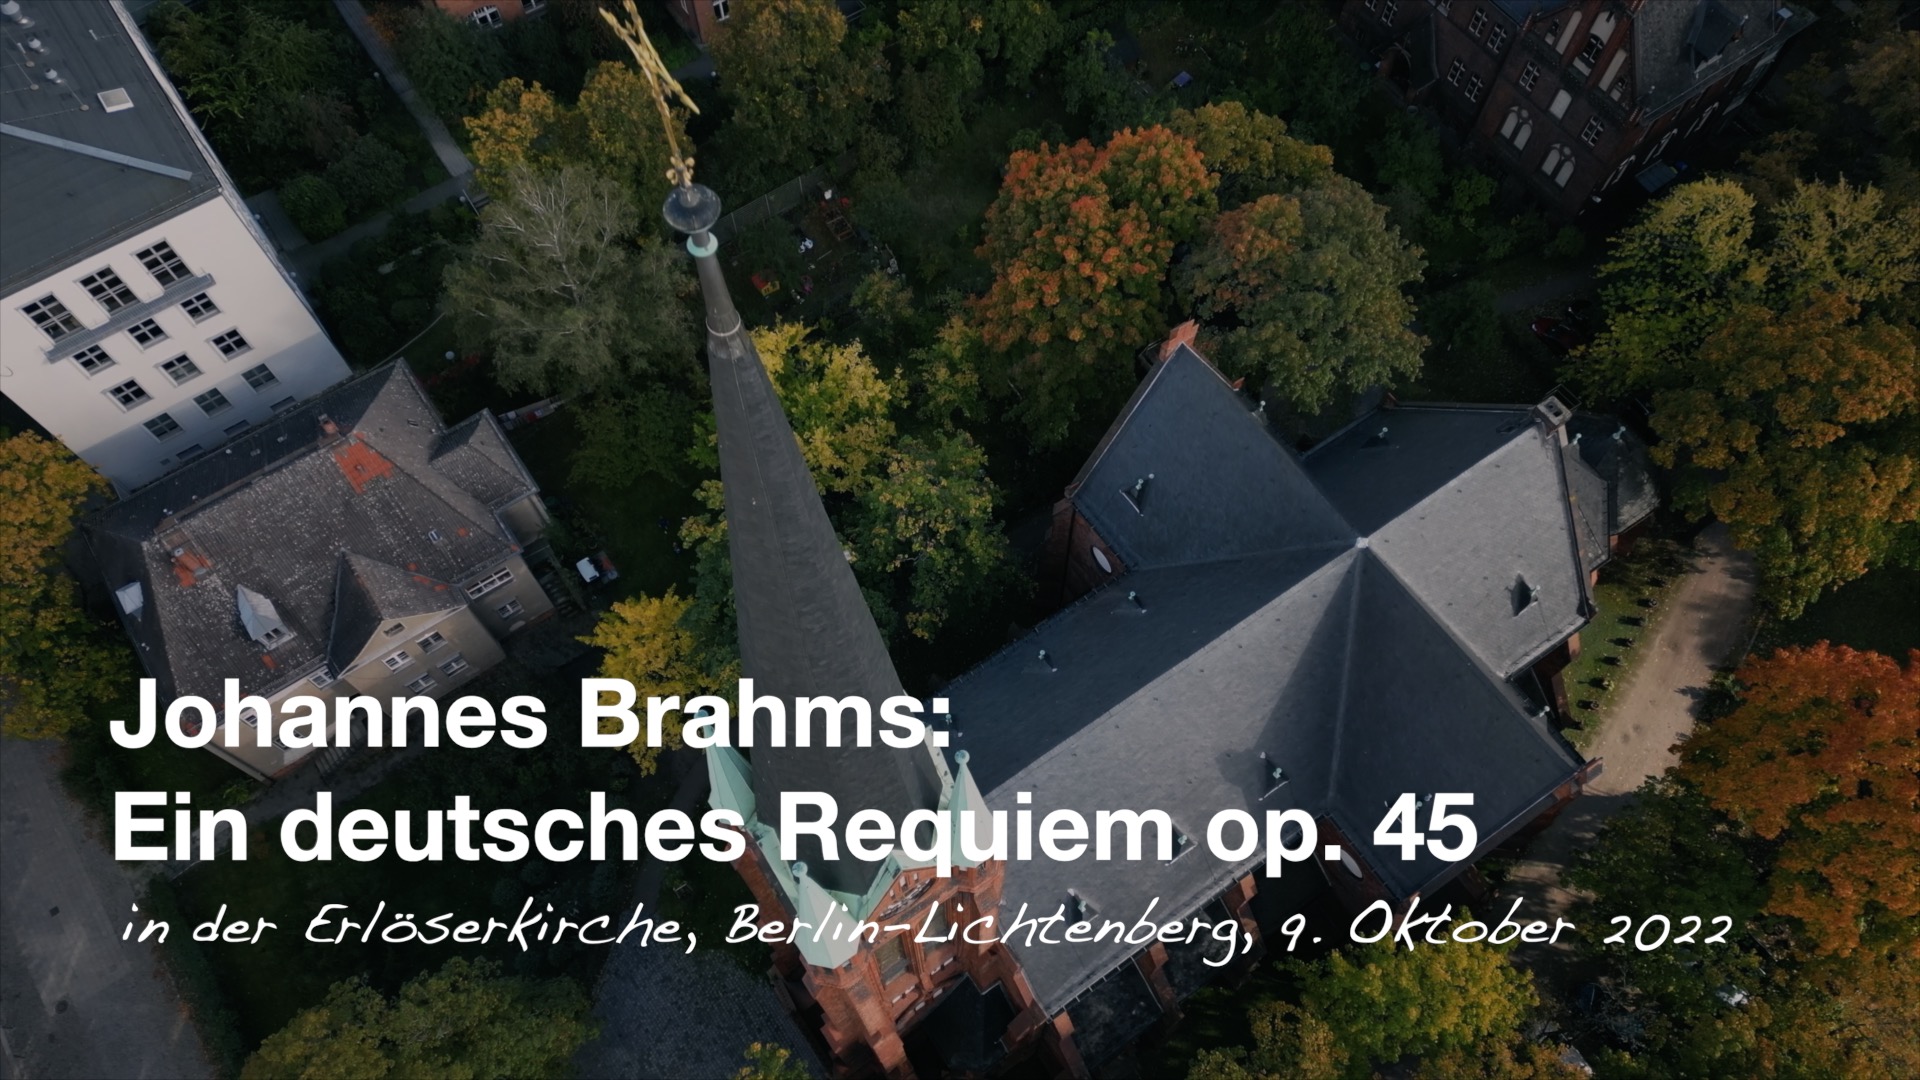 Brahms Requiem - Aufführung 9.10.2022 in der Erlöserkirche